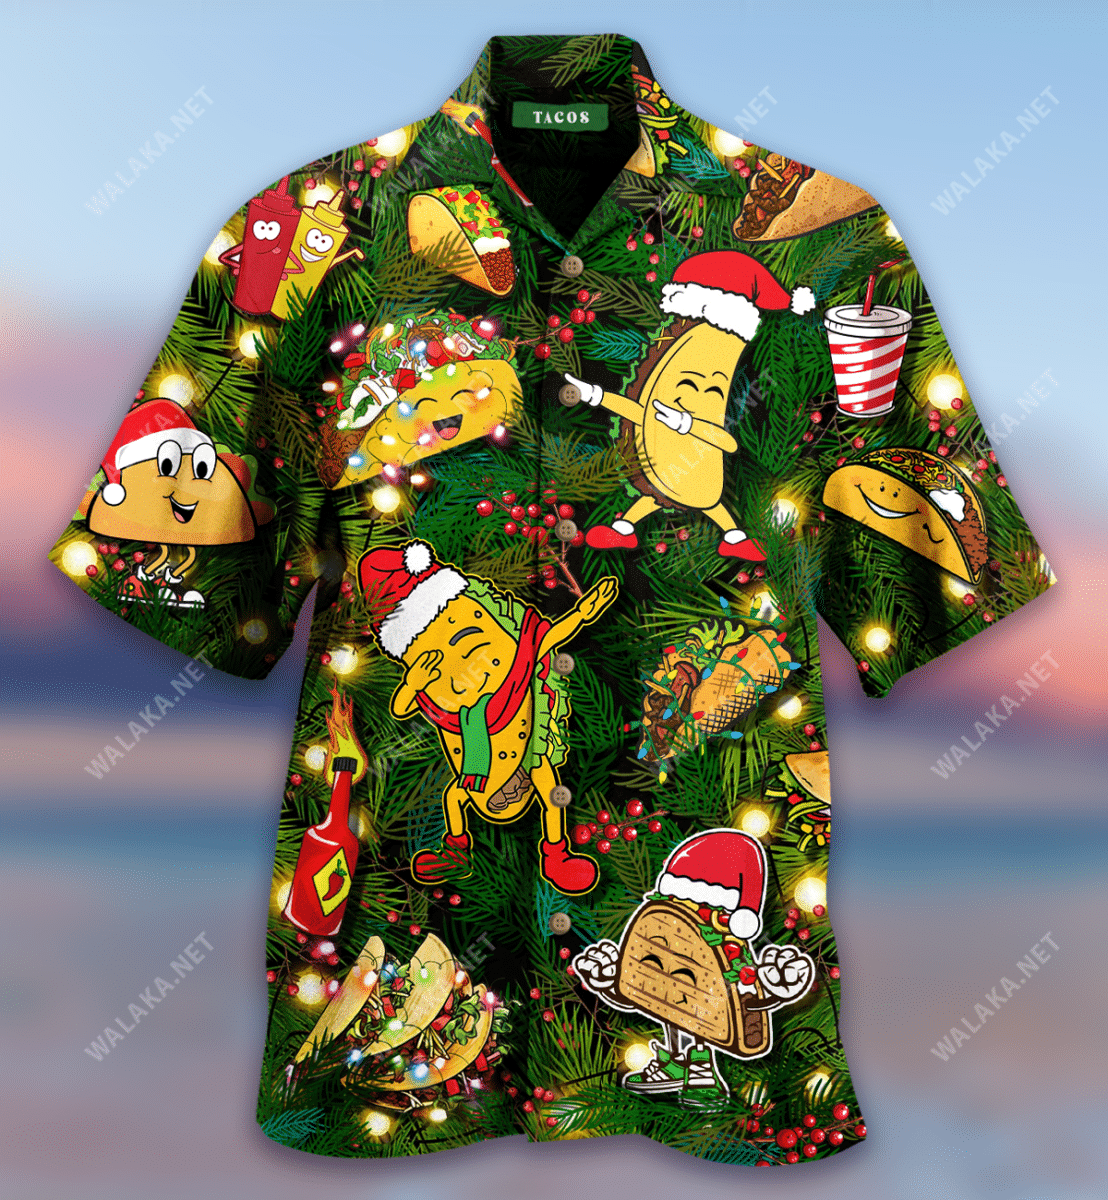 You Have Me At Tacos Colorful Good Hawaiian Shirt   19051959